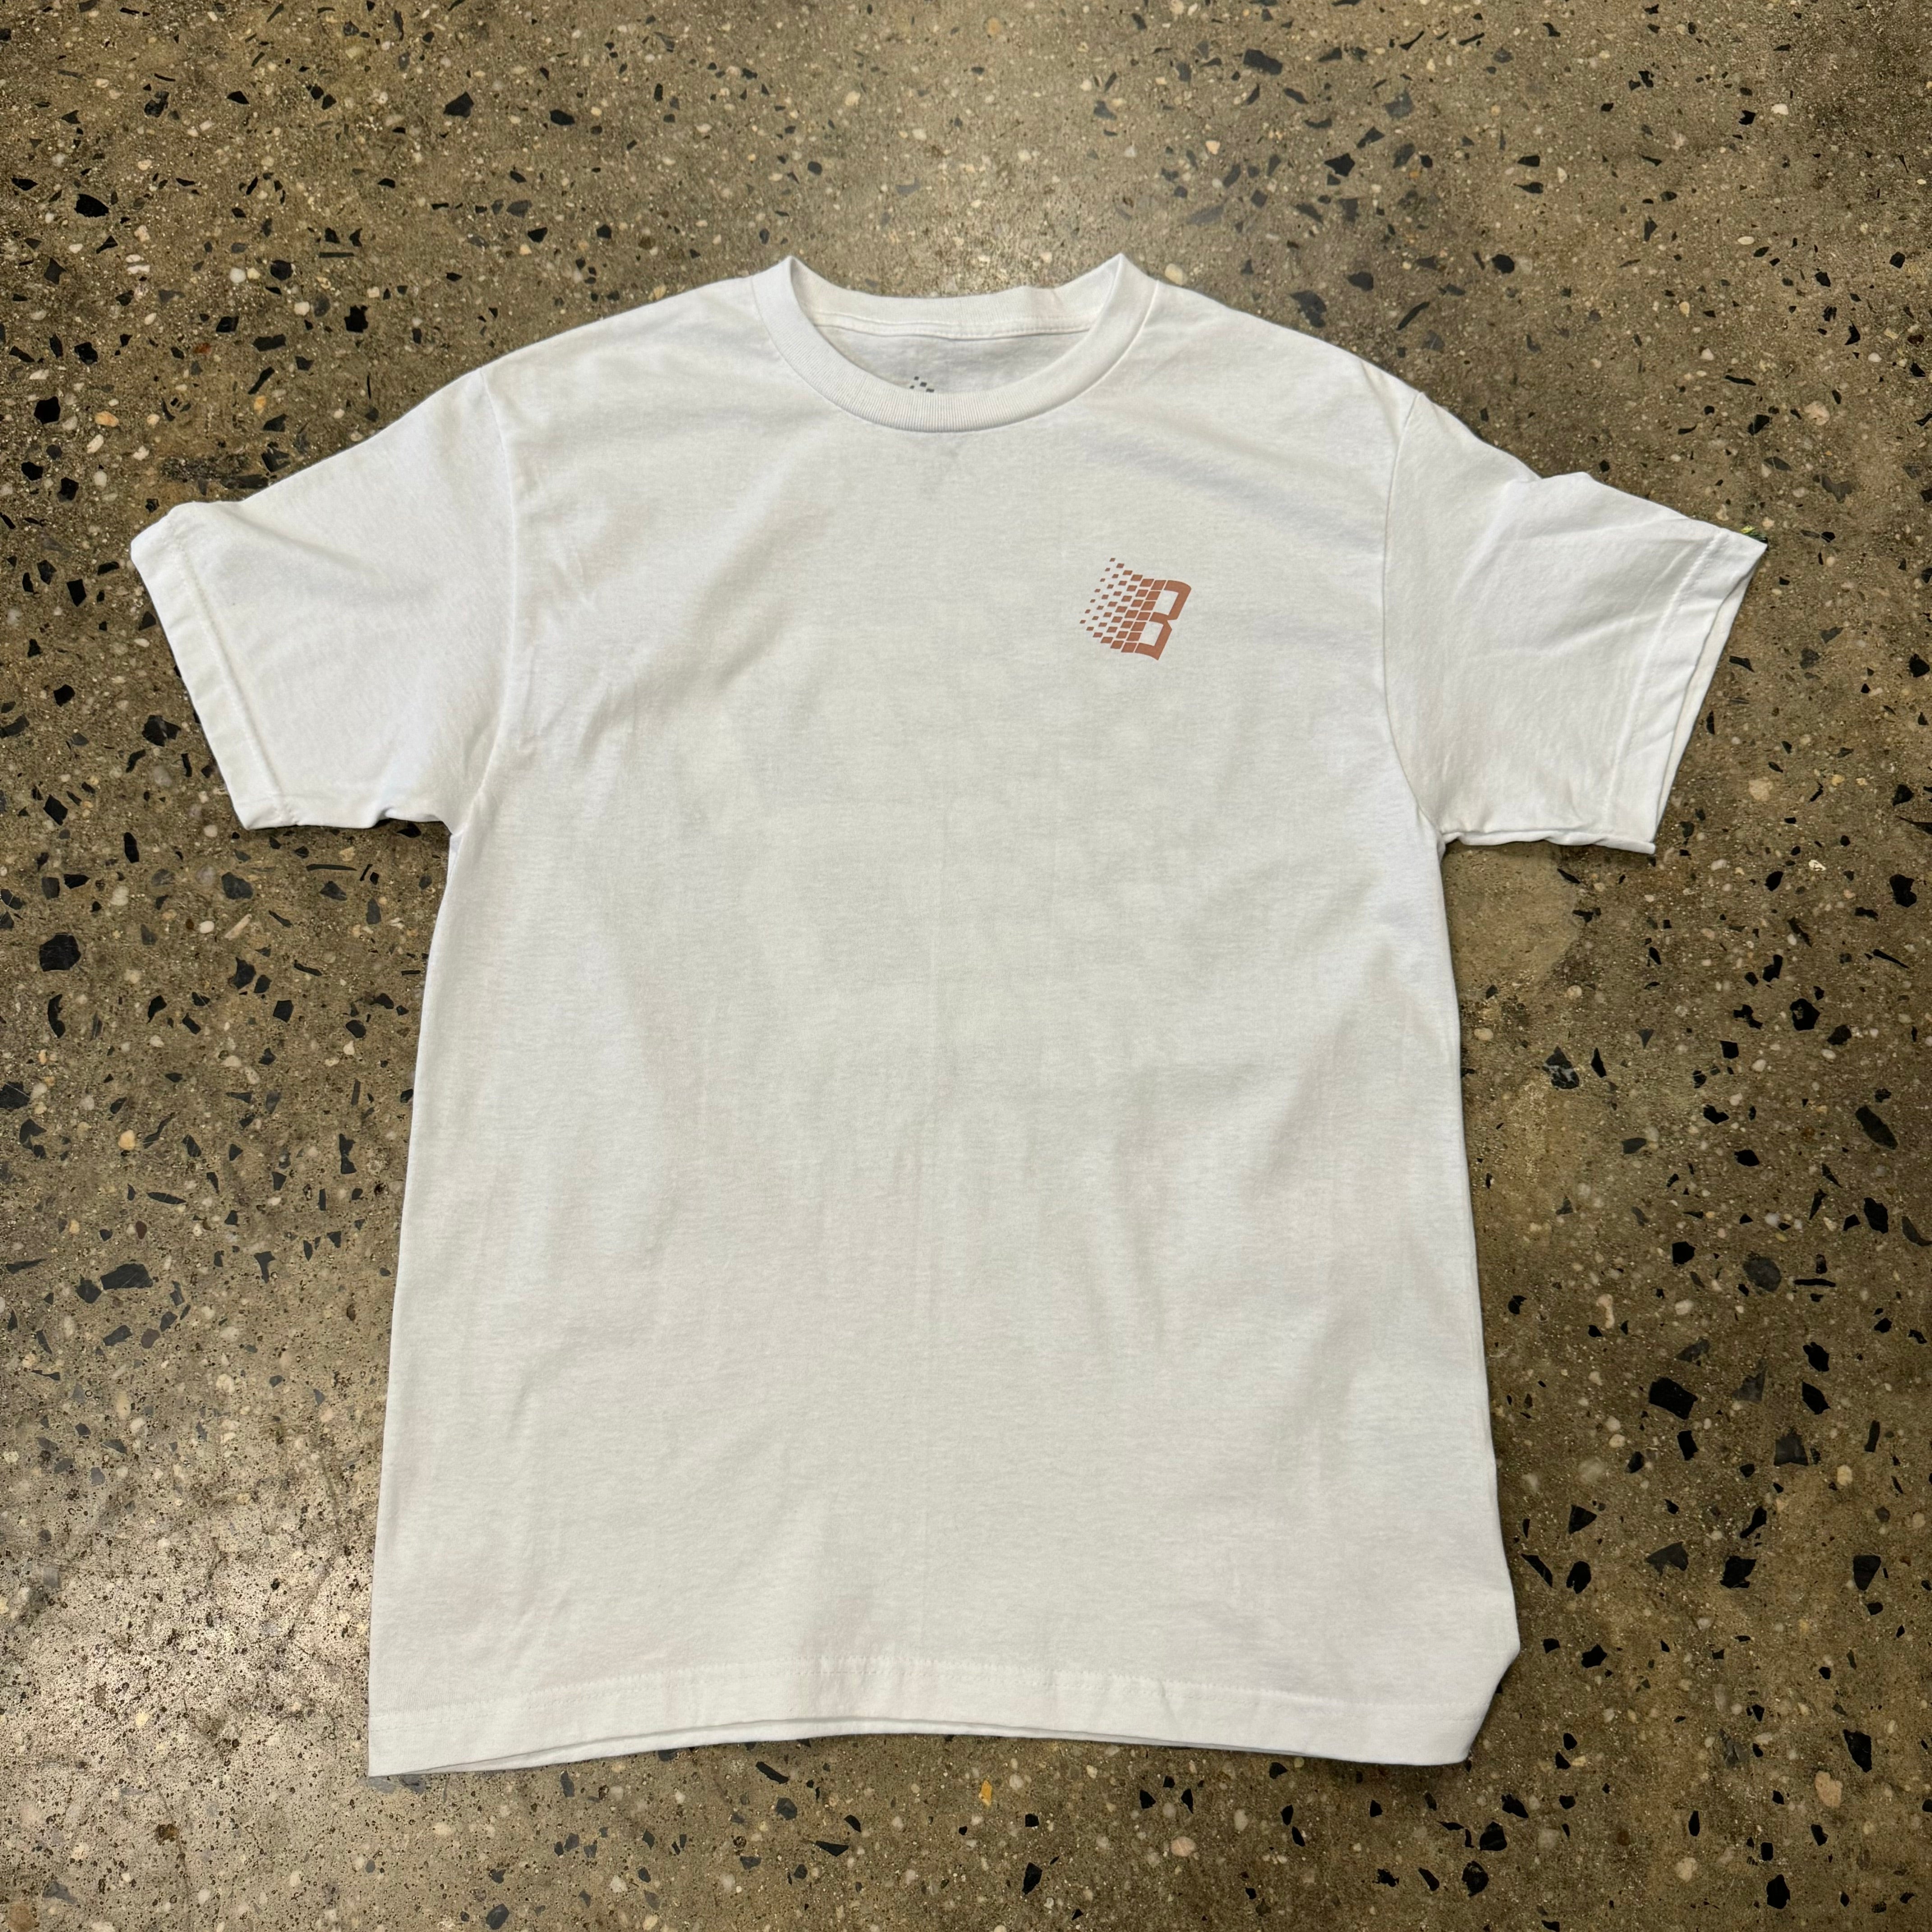 Bronze 56k Balloon Logo T-Shirt - White - Labor Skateboard Shop